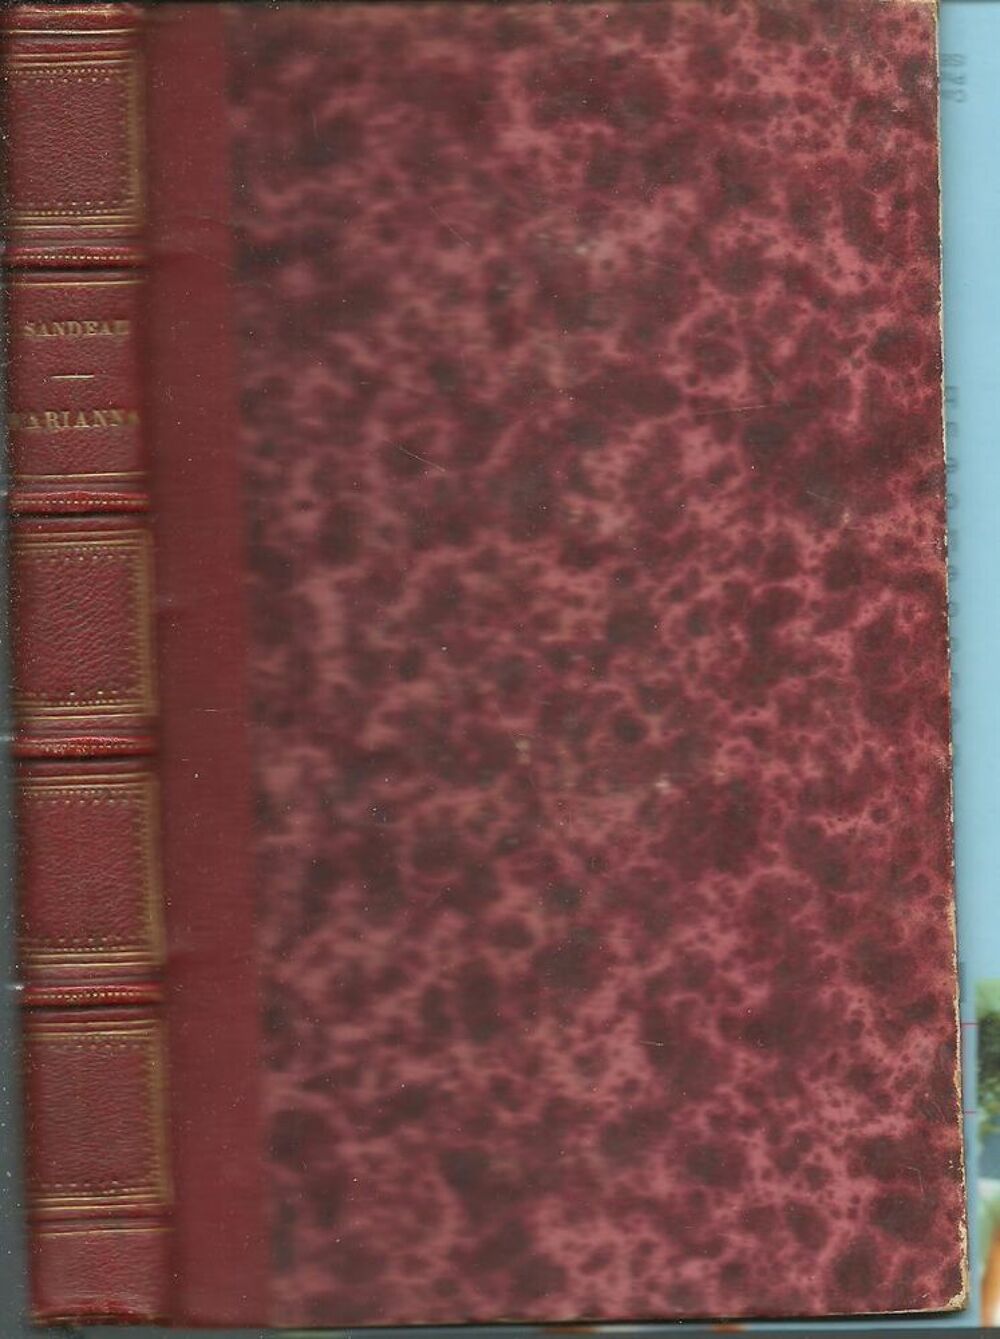 MARIANNA par Jules SANDEAU - 1860 Livres et BD